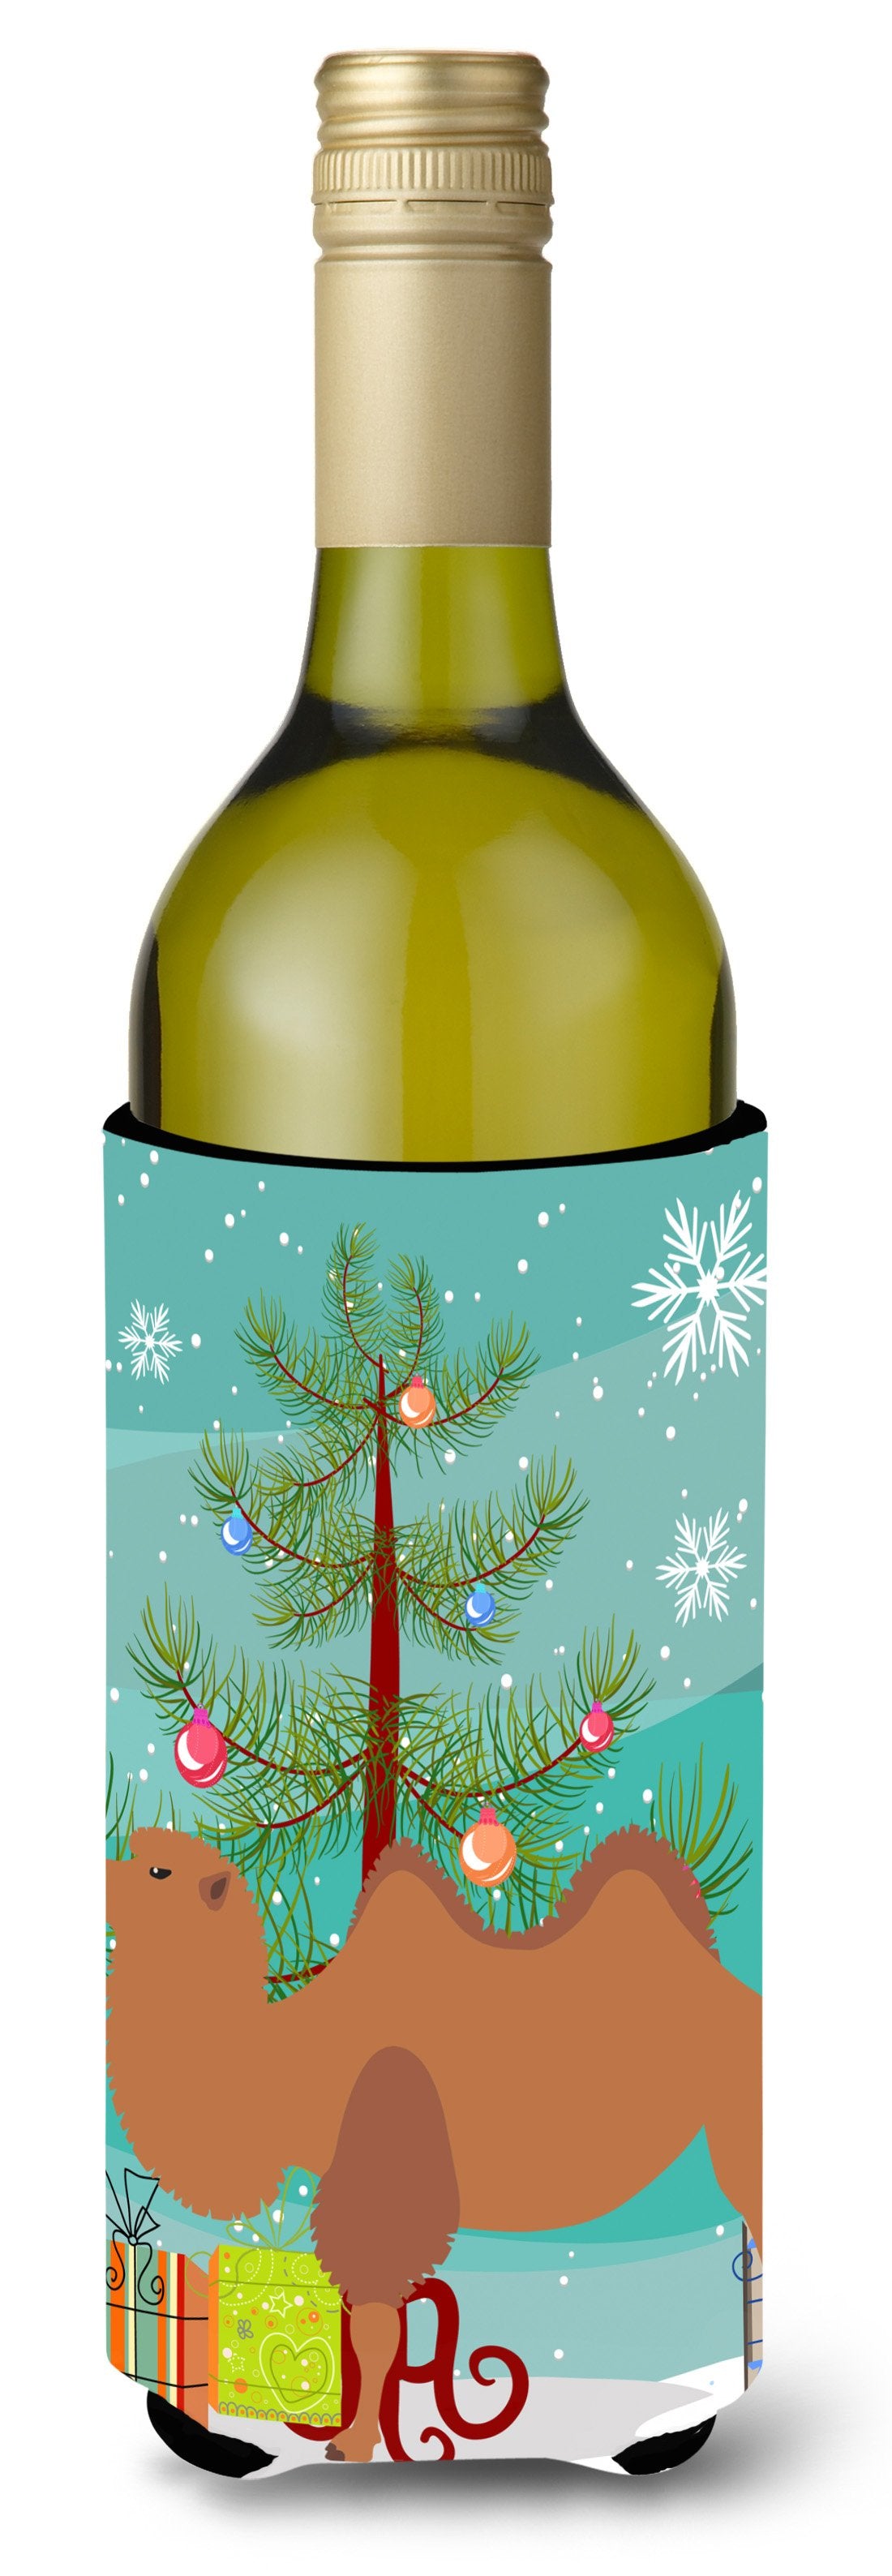 Bactrian Camel Christmas Wine Bottle Beverge Insulator Hugger BB9185LITERK by Caroline's Treasures